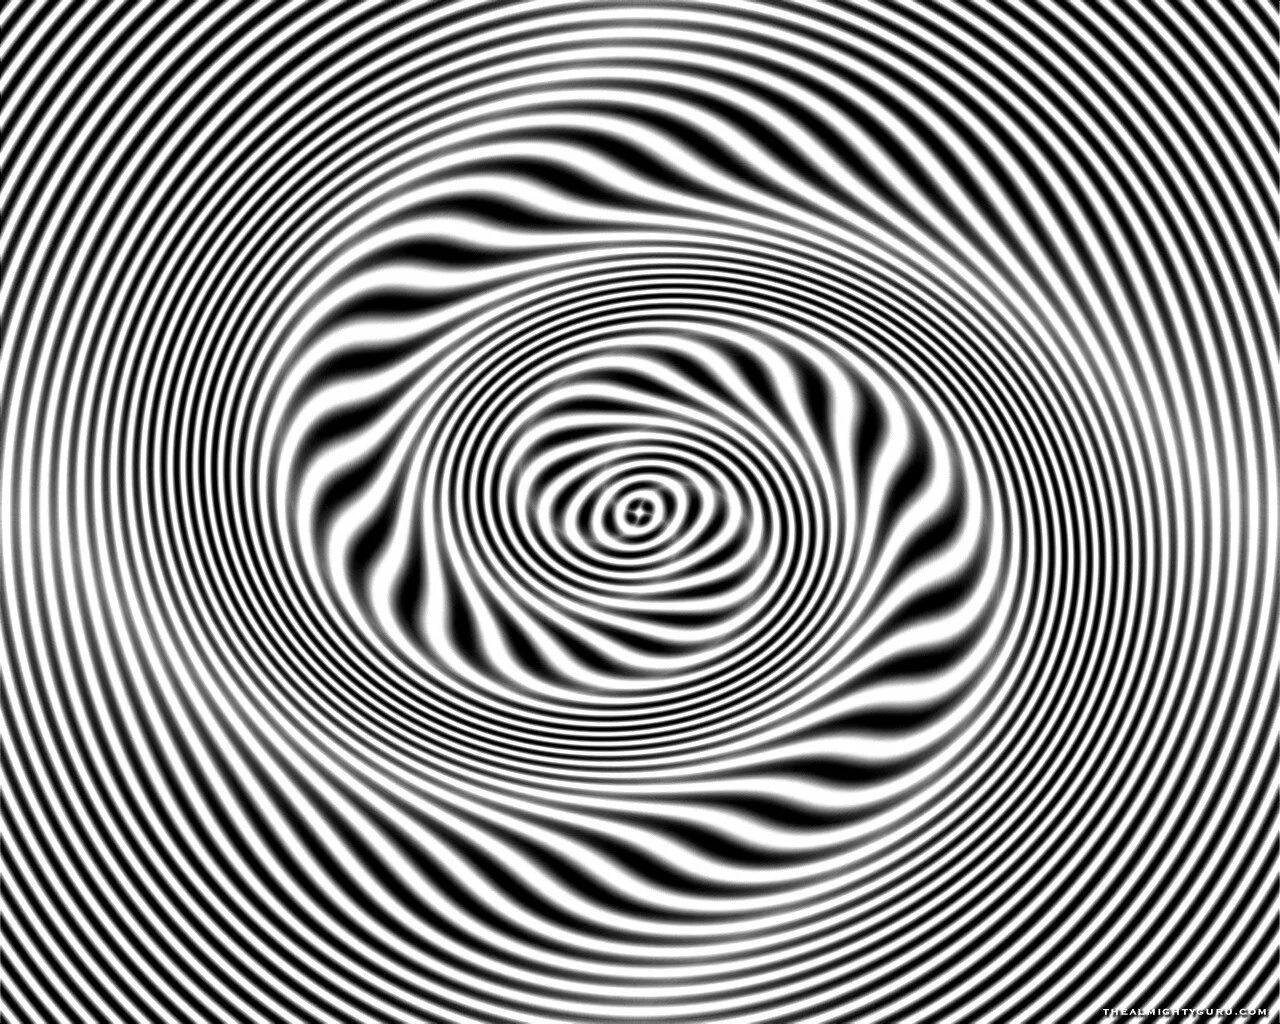 Двигаться б. Гипноз. Черно белая спираль. Гипнотическая спираль. Гипнотические иллюзии.